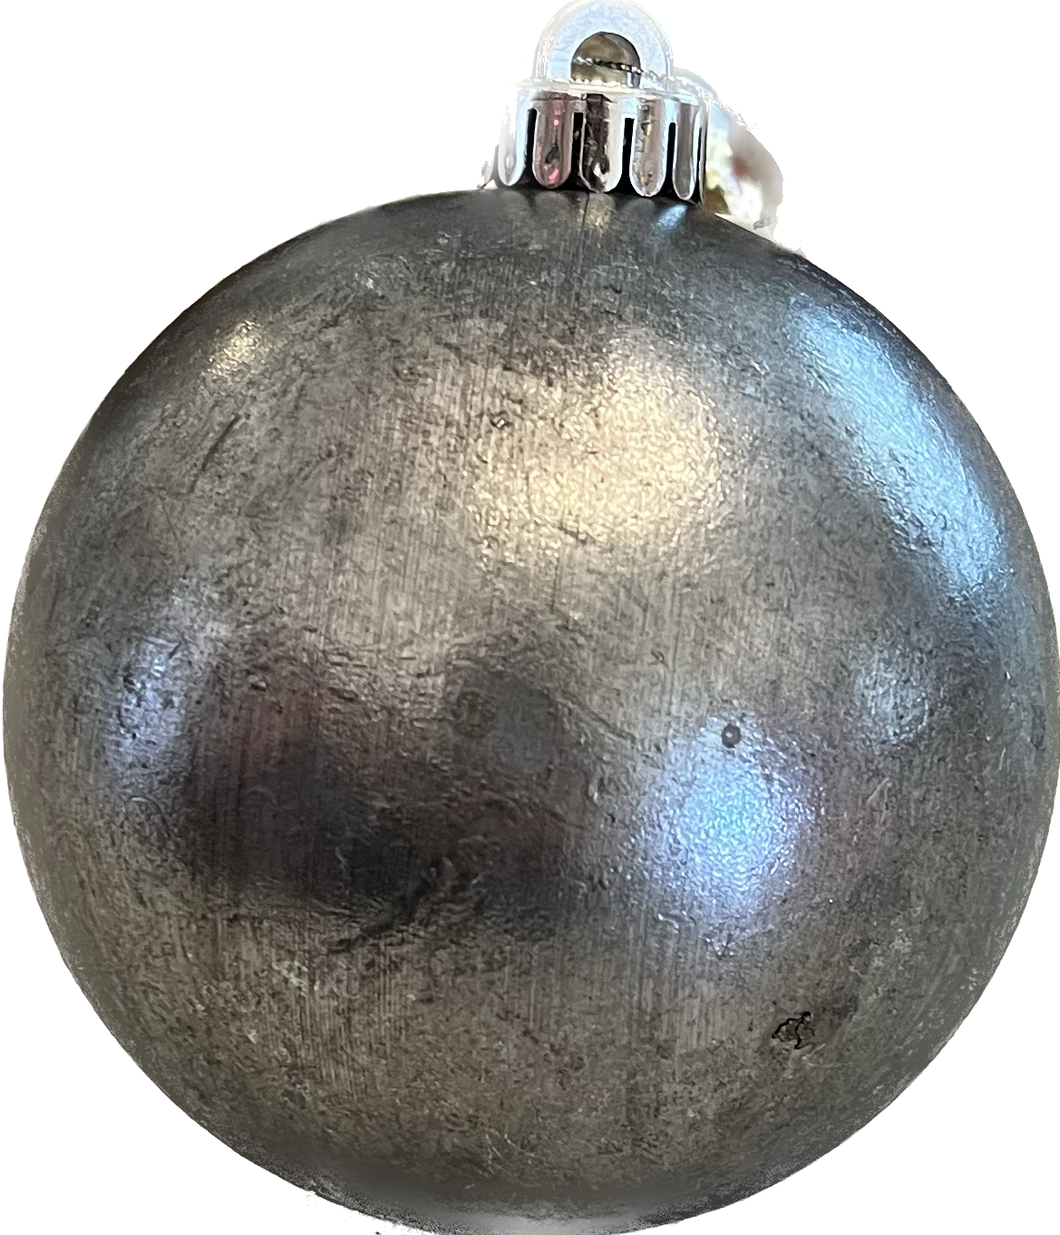 Silver Mercury Ornament